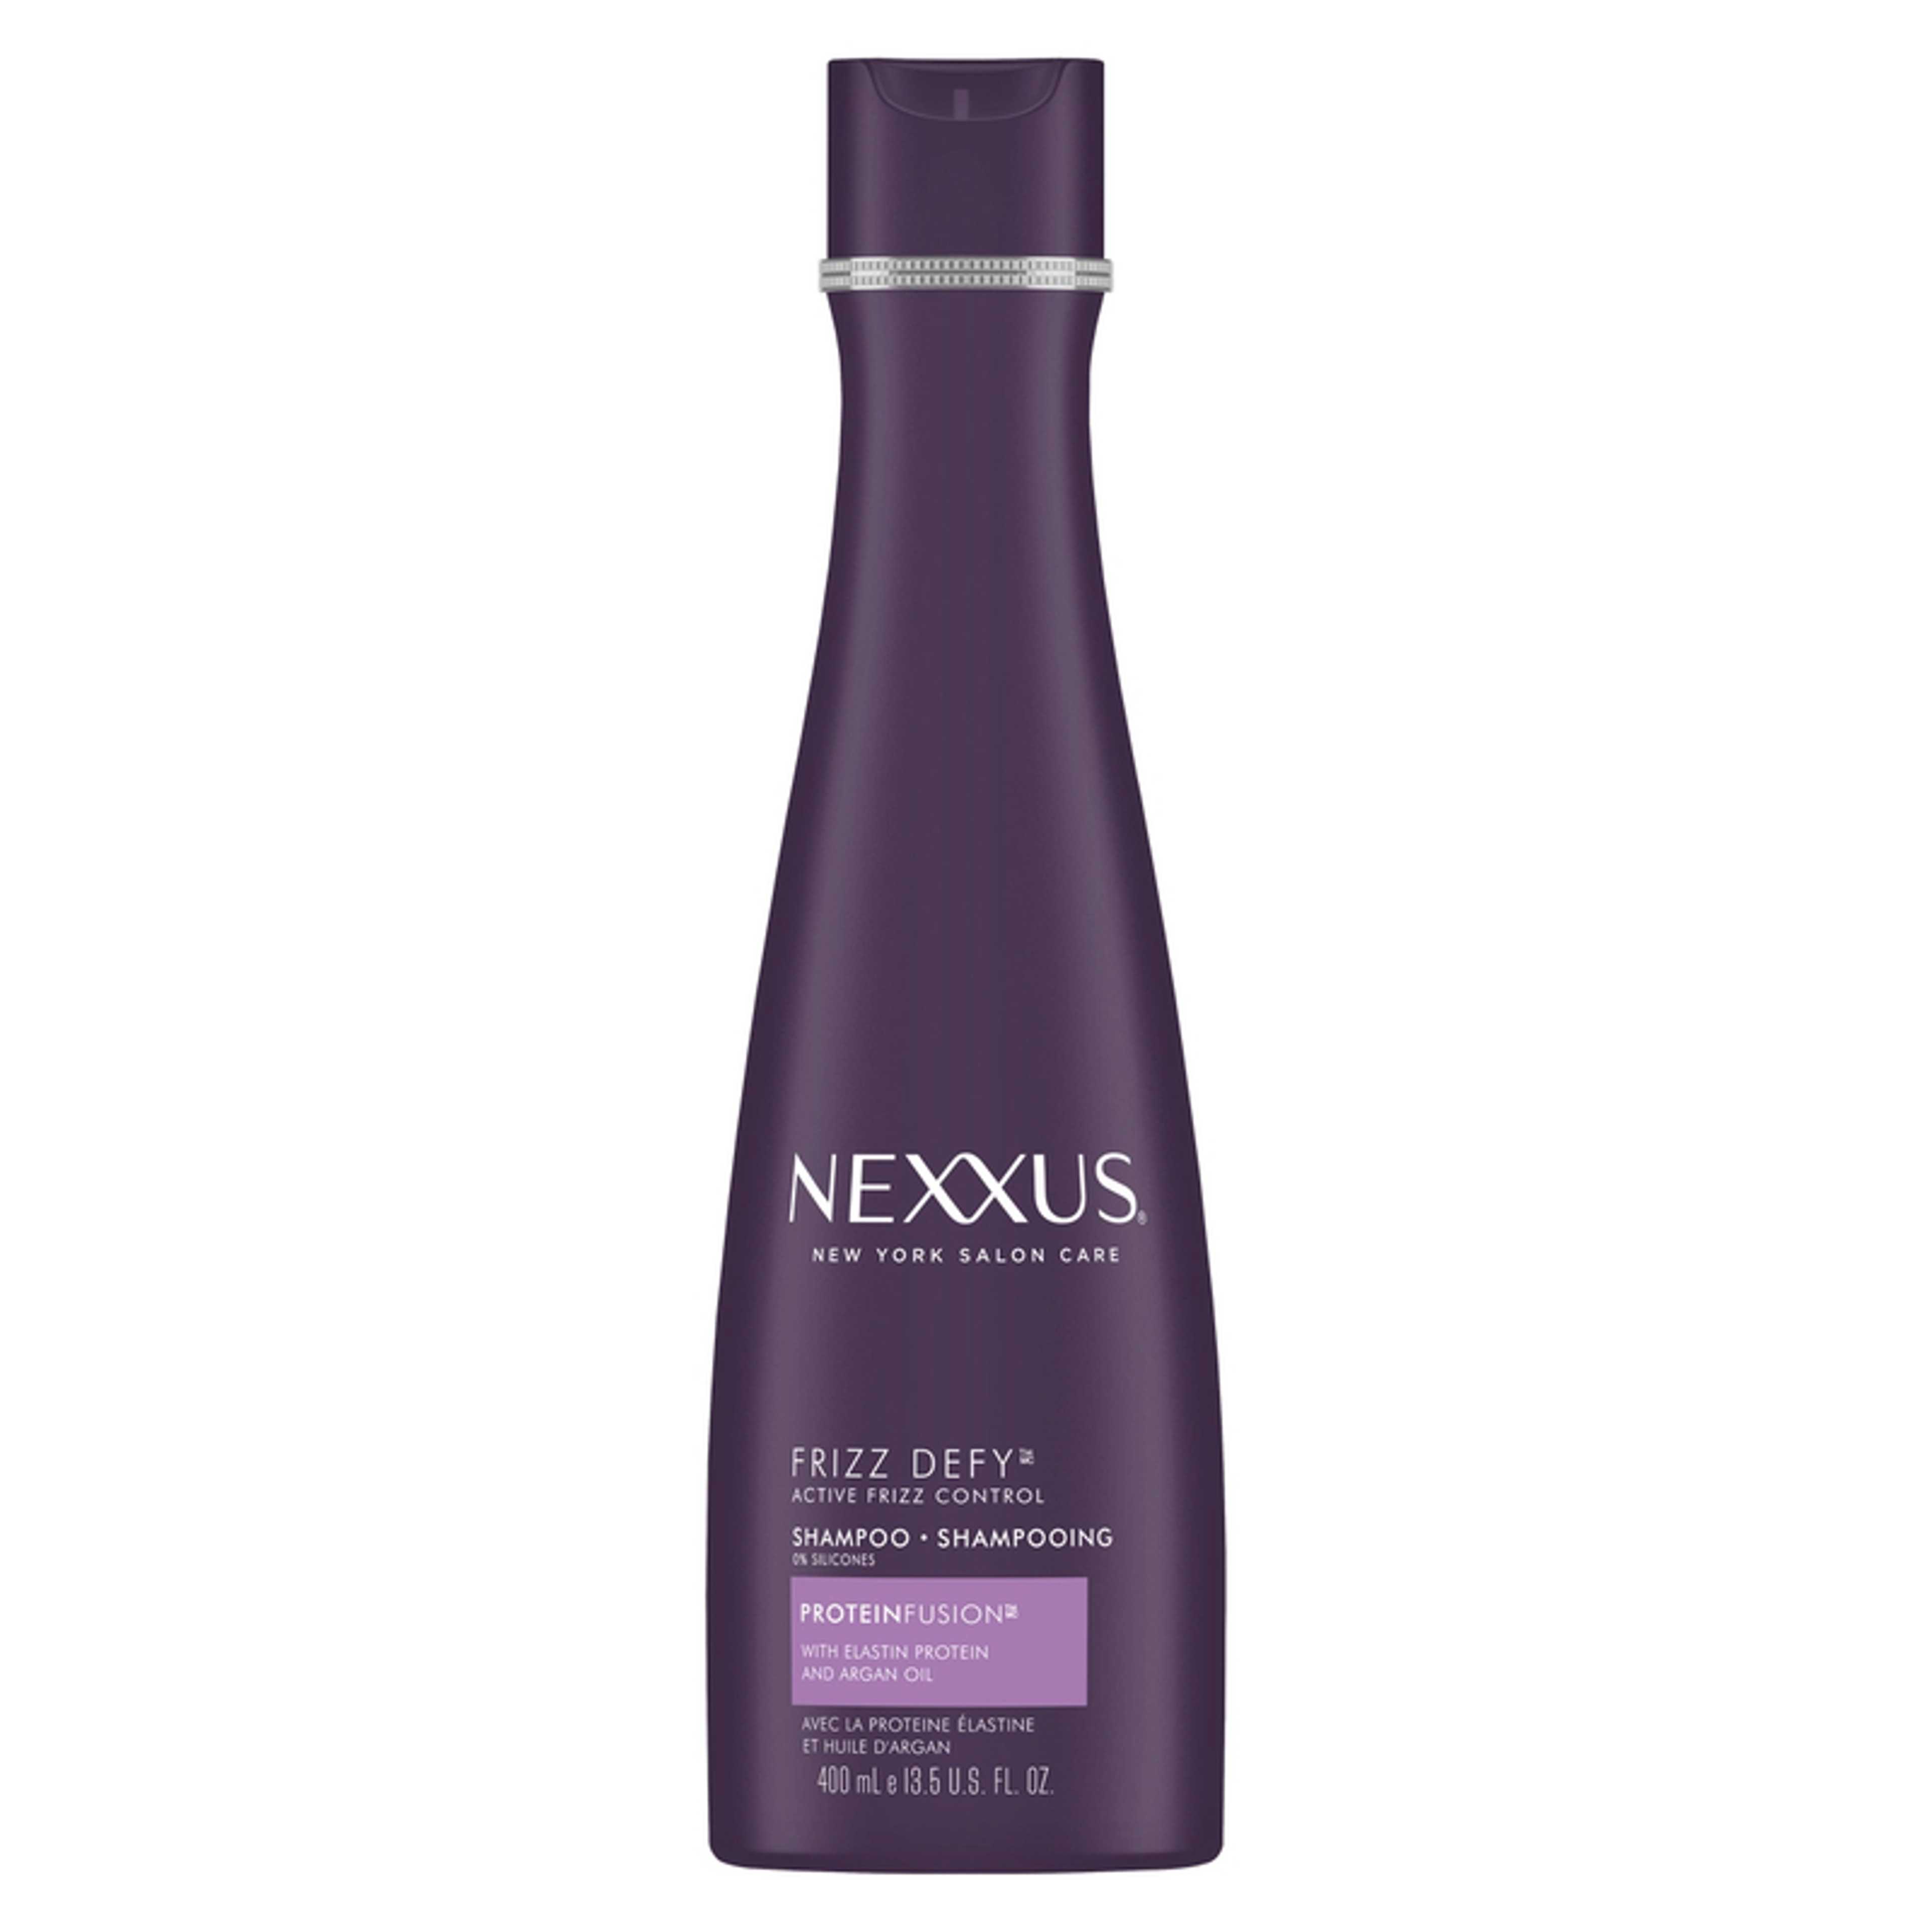 Nexxus Frizz Defy Shampoo Active Frizz Control,400ml